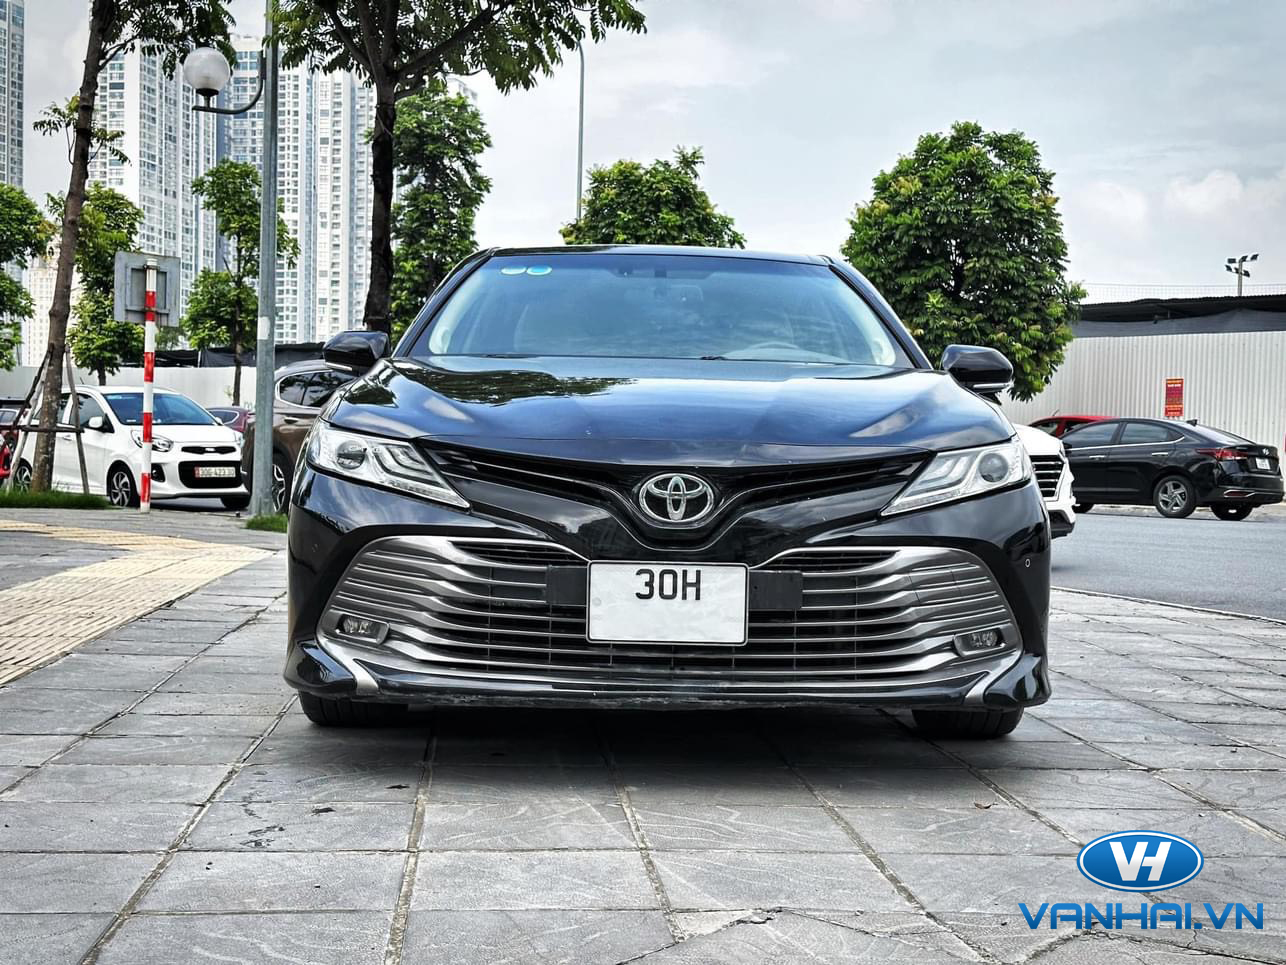 Dịch vụ cho thuê xe 4 chỗ Toyota Camry 2.5 tại Hà Nội